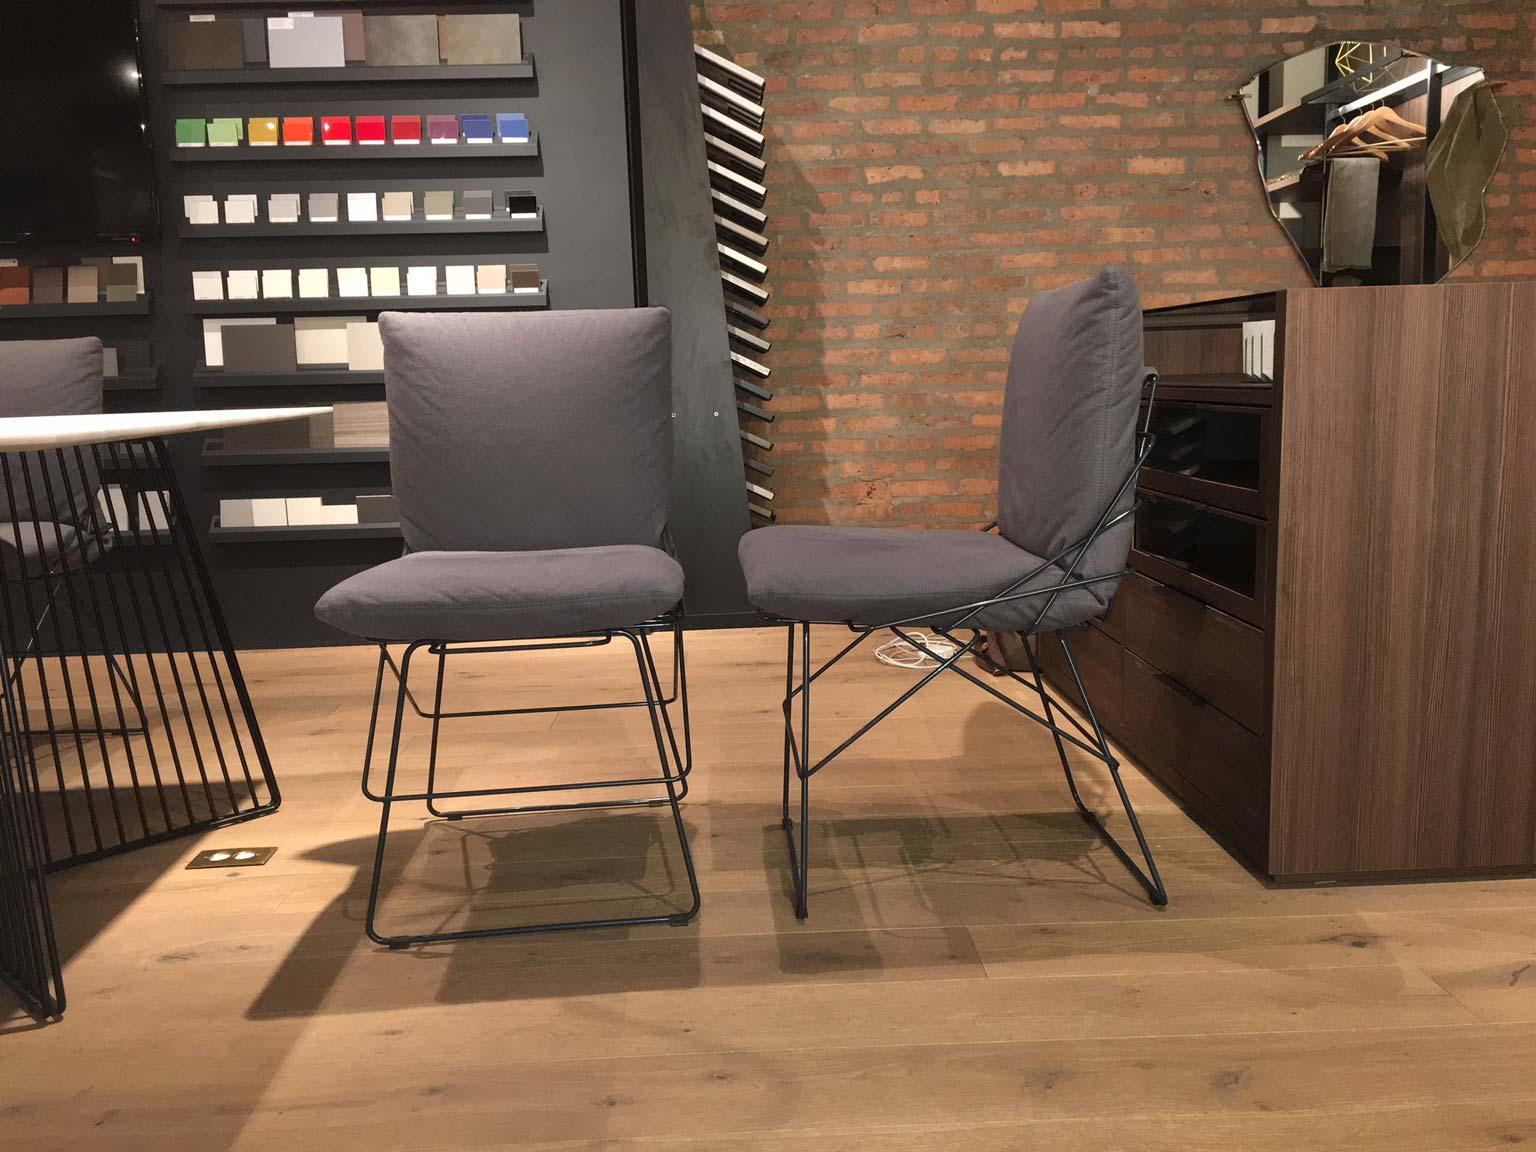 Cette chaise Sof Sof a des lignes harmonieuses qui transmettent l'élégance essentielle du design d'Enzo Mari. Fabriqué par Driade en 1972 et refait en 2015, Sof Sof est une icône intemporelle. La structure est presque une sculpture, composée de neuf